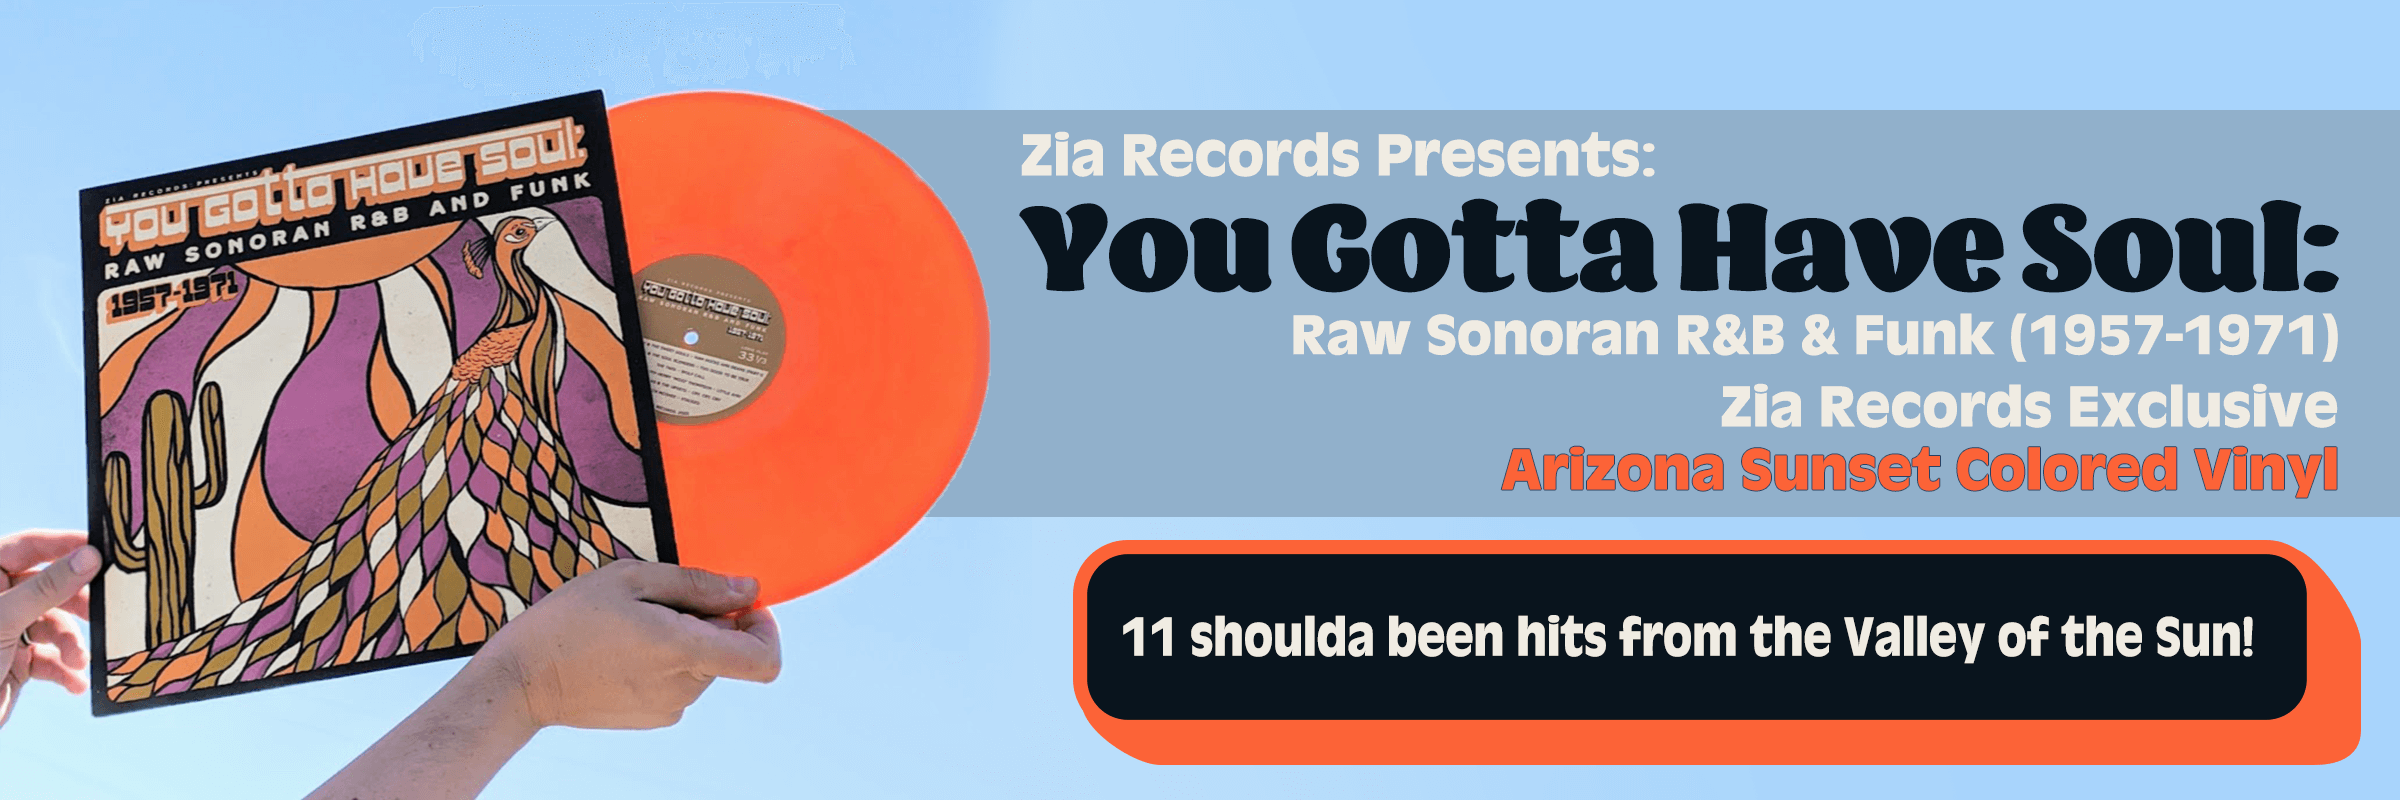 zia records